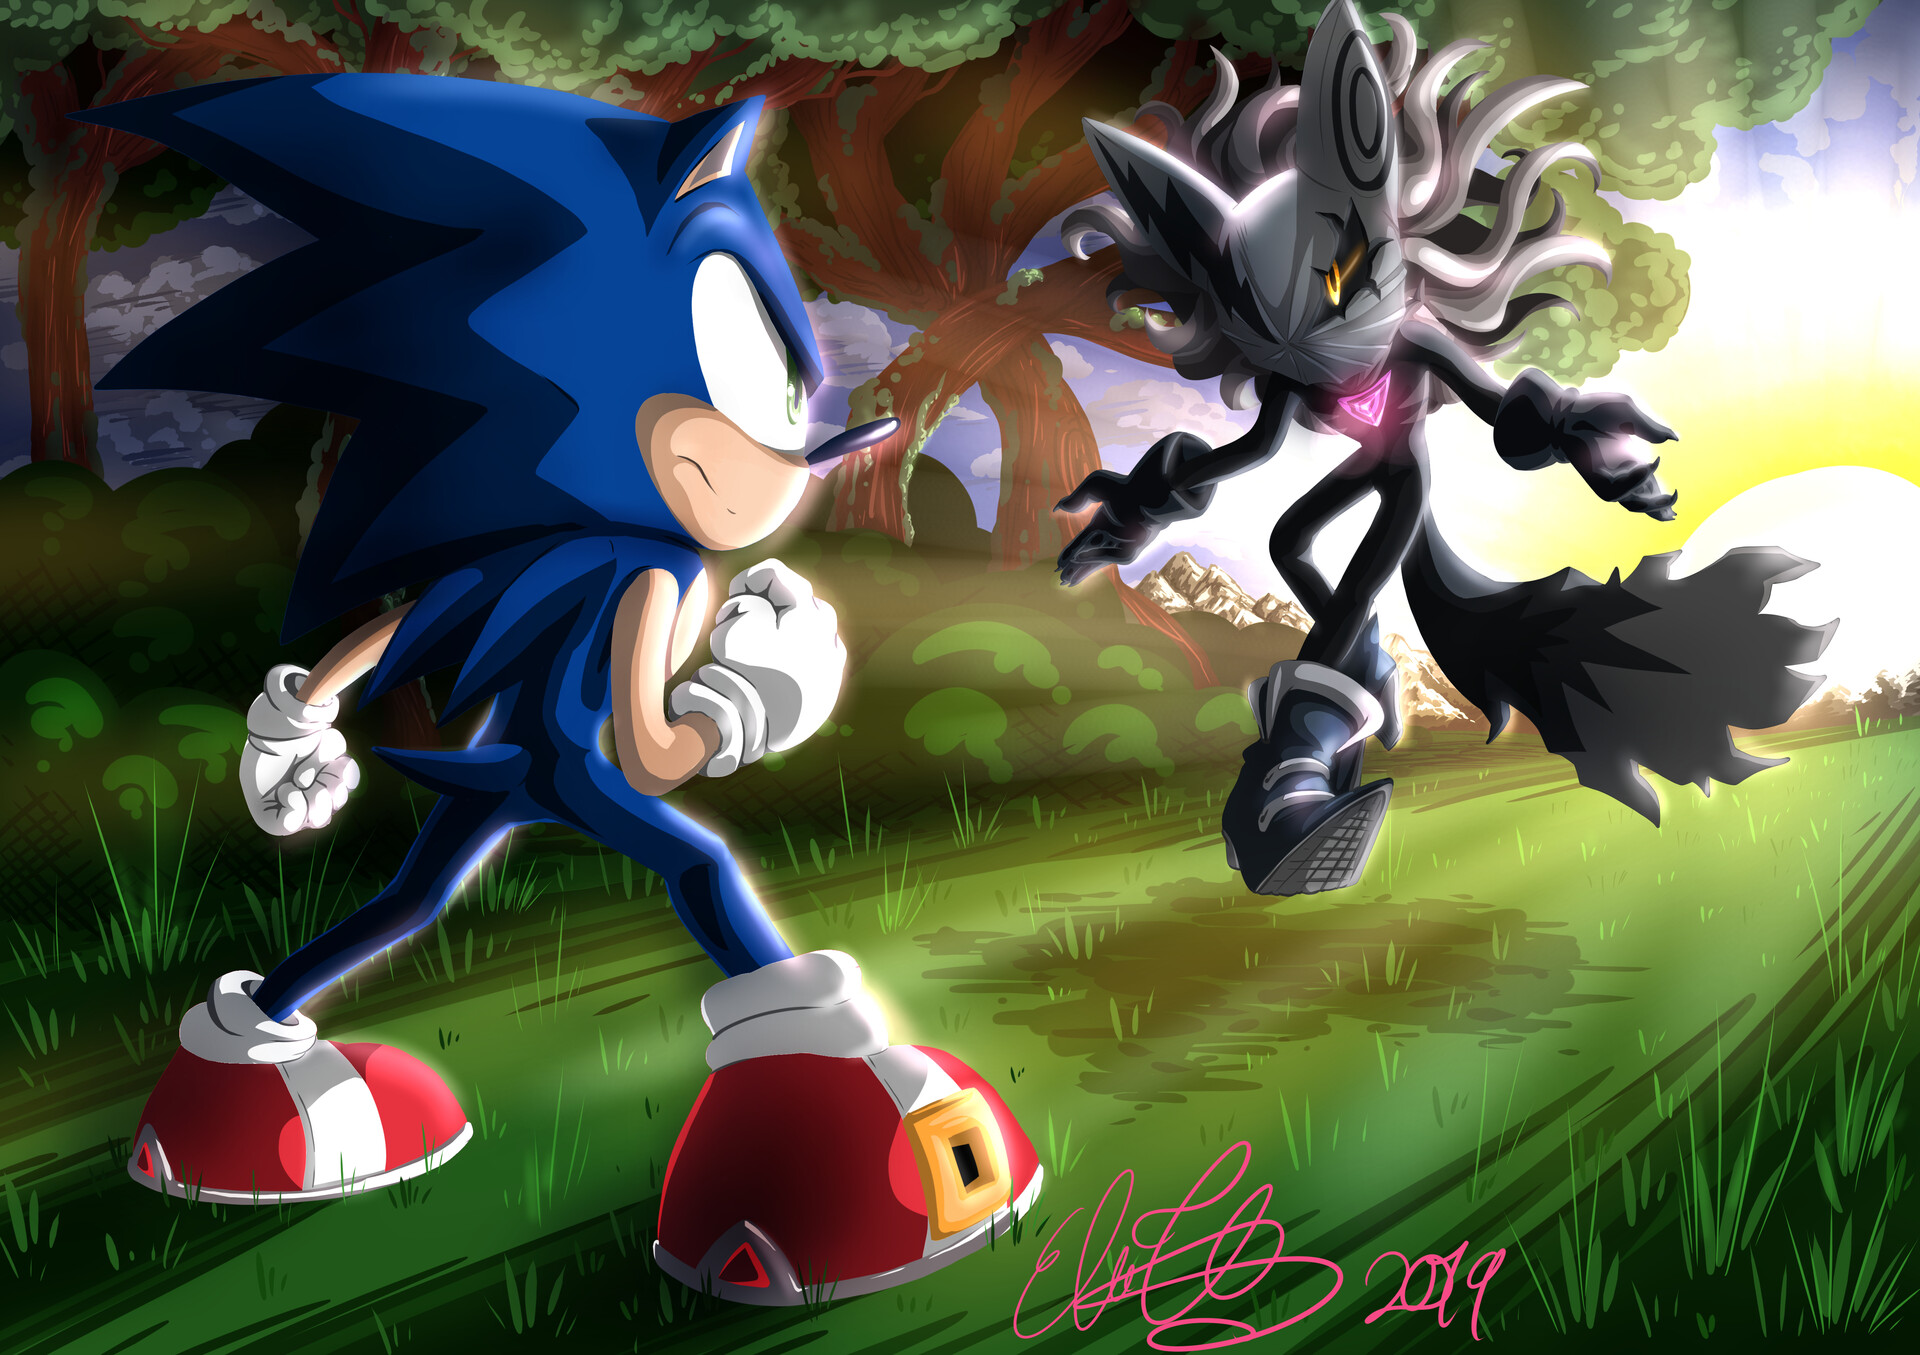 Fan art: Sonic vs. Infinite, WattottaW.